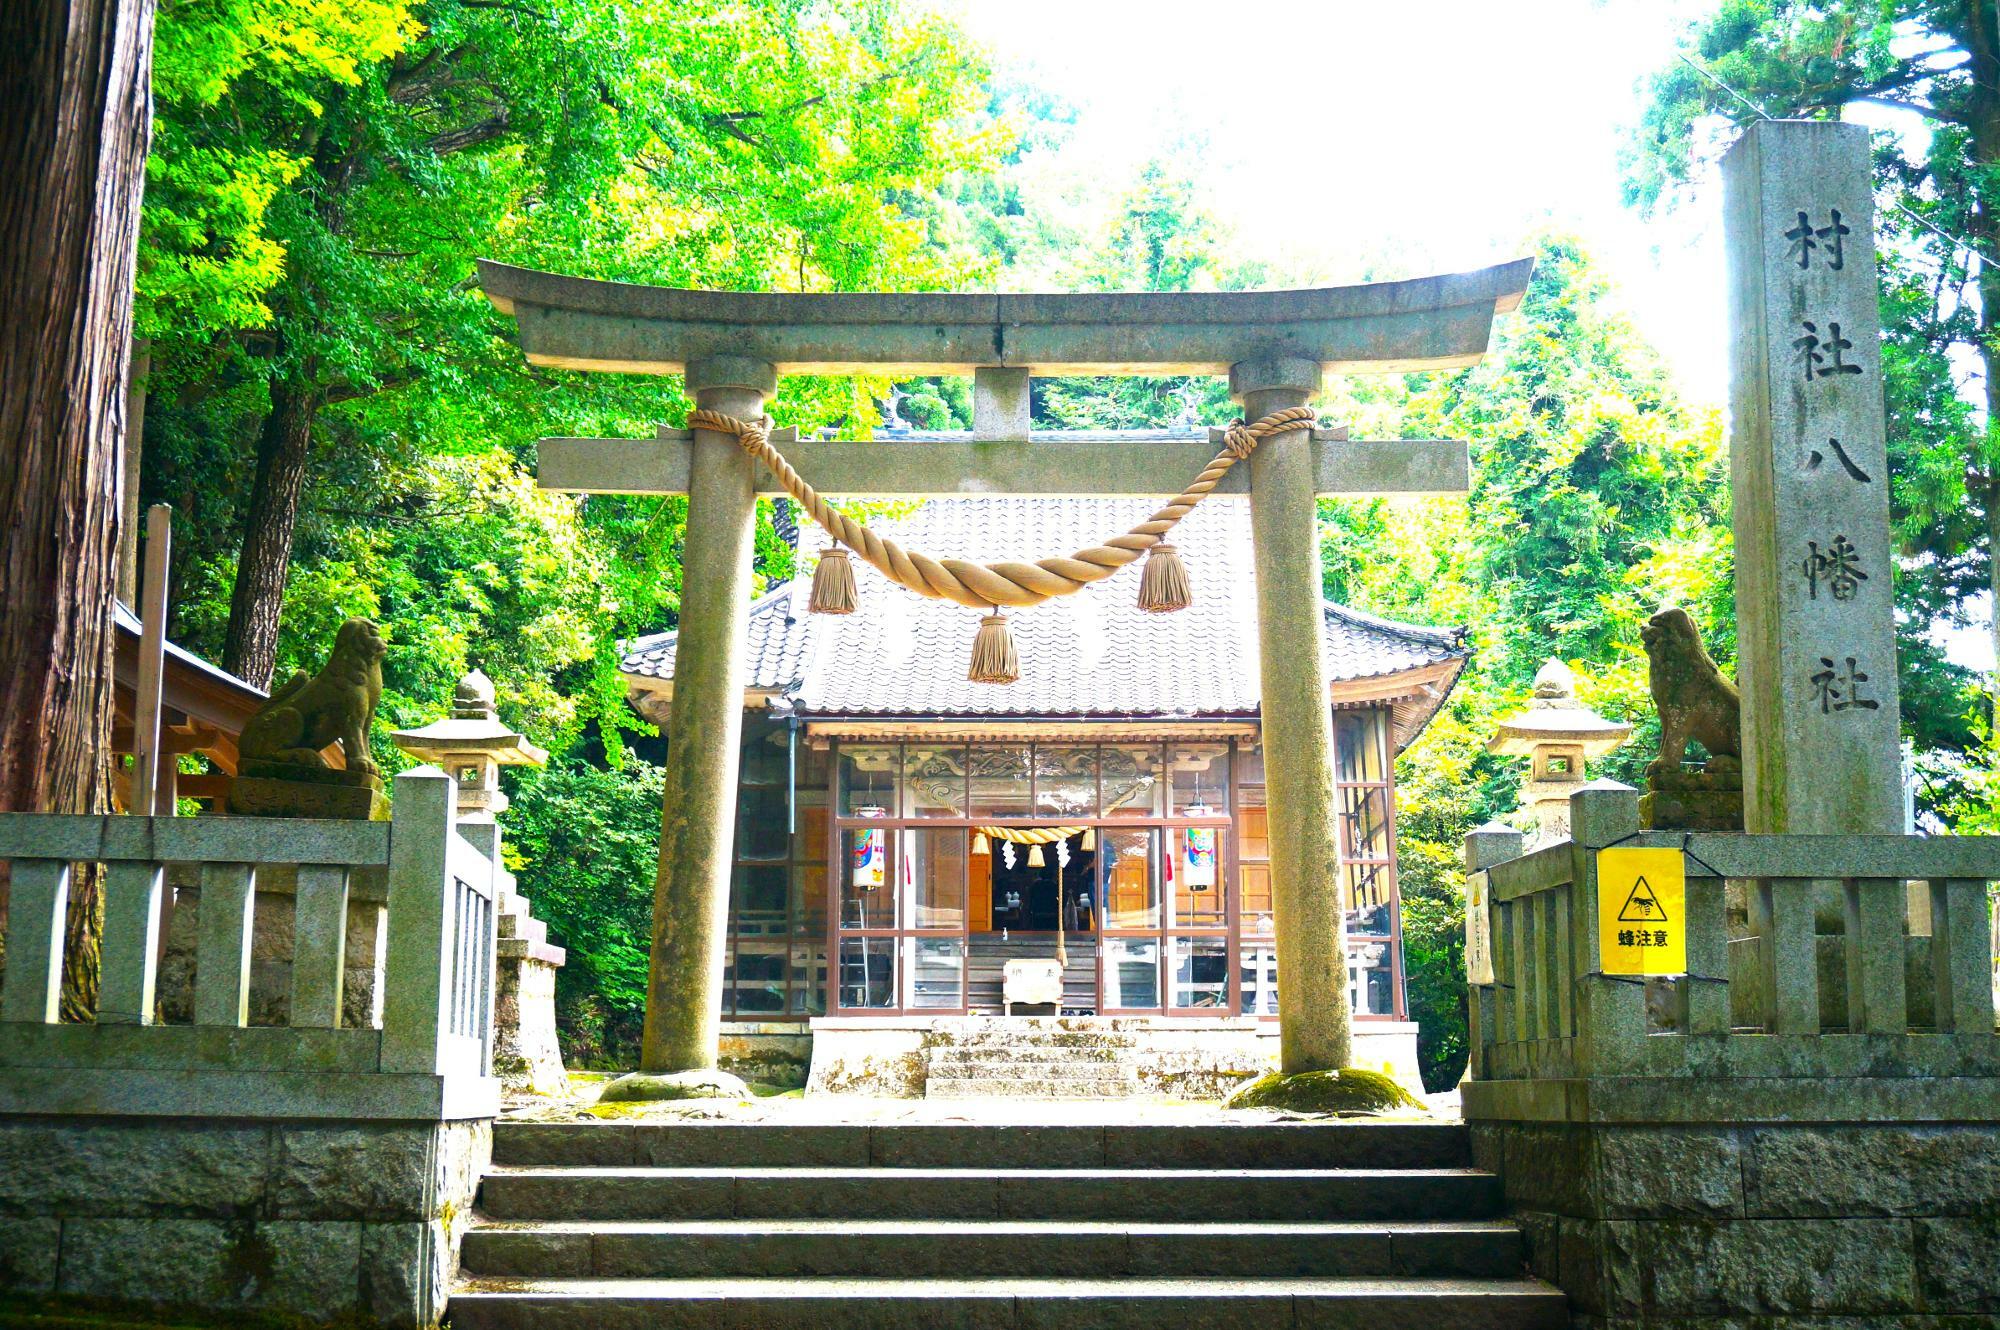 「下山八幡社」の滝開きには、拝殿の扉が開かれていました。